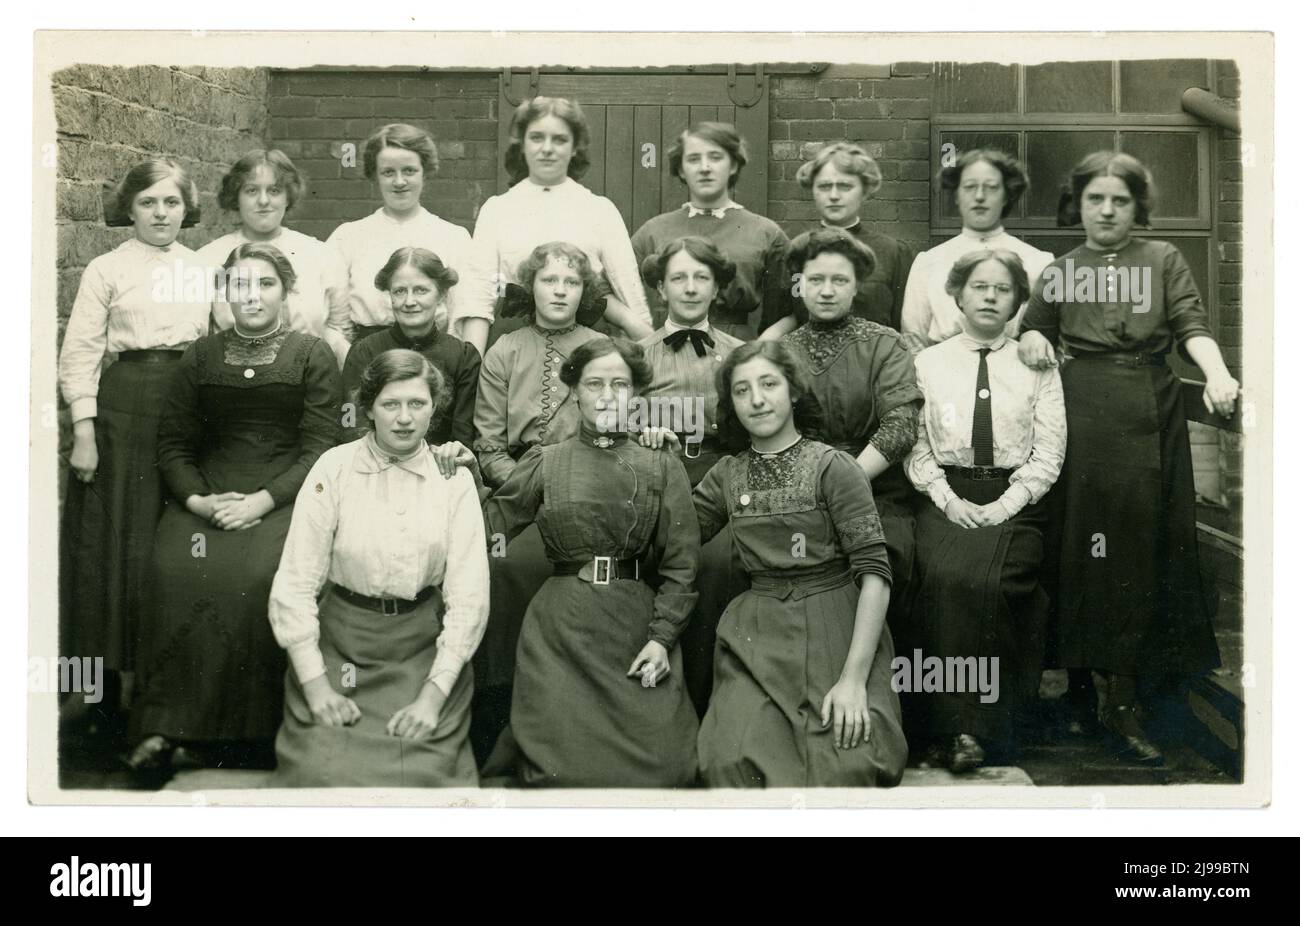 Original et clair WW1 ans groupe en plein air portrait de filles de moulin de textile à argiles Mill. Ils sont soit des opérateurs de l'usine portant leur dimanche meilleur ou le personnel de bureau. Beaucoup de chemisiers et de vêtements de jupe différents de l'époque. Trois des filles portent des badges, peut-être ceux de la compagnie "sur le service de guerre". Les filles travaillent dans la fabrication - peut-être des lainages ou des textiles de coton. Clay's Mill, Halifax, Yorkshire, Angleterre, Royaume-Uni vers 1915 ,1916 Banque D'Images